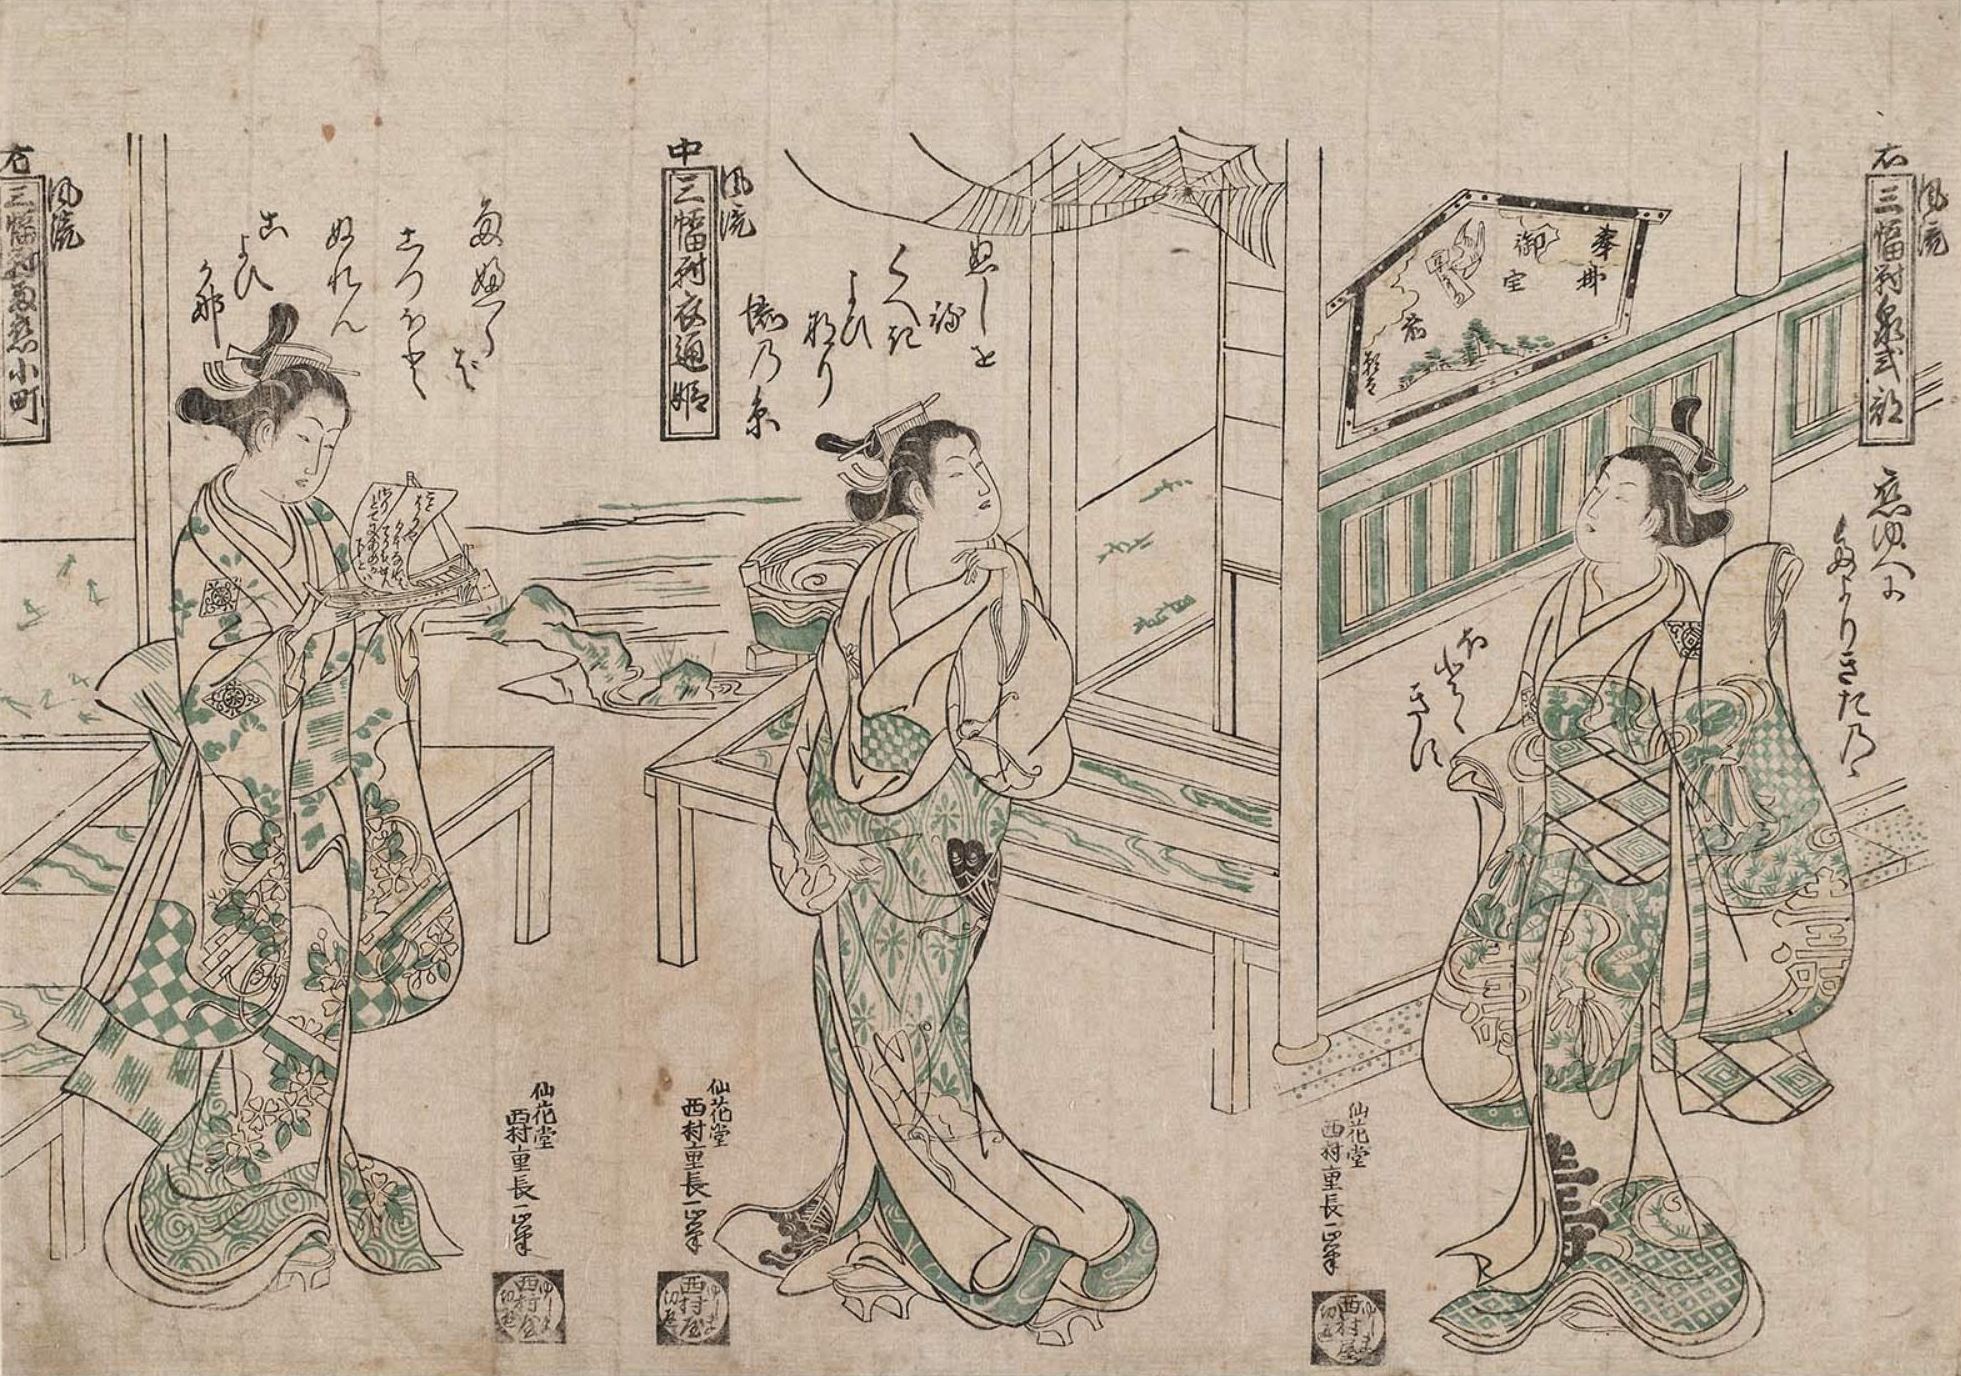 Нисимура Сигэнага. Триптих "Модницы". Слева "Идзуми Сикибу", в центре "Сотоорихими", справа "Комати молится о дожде".